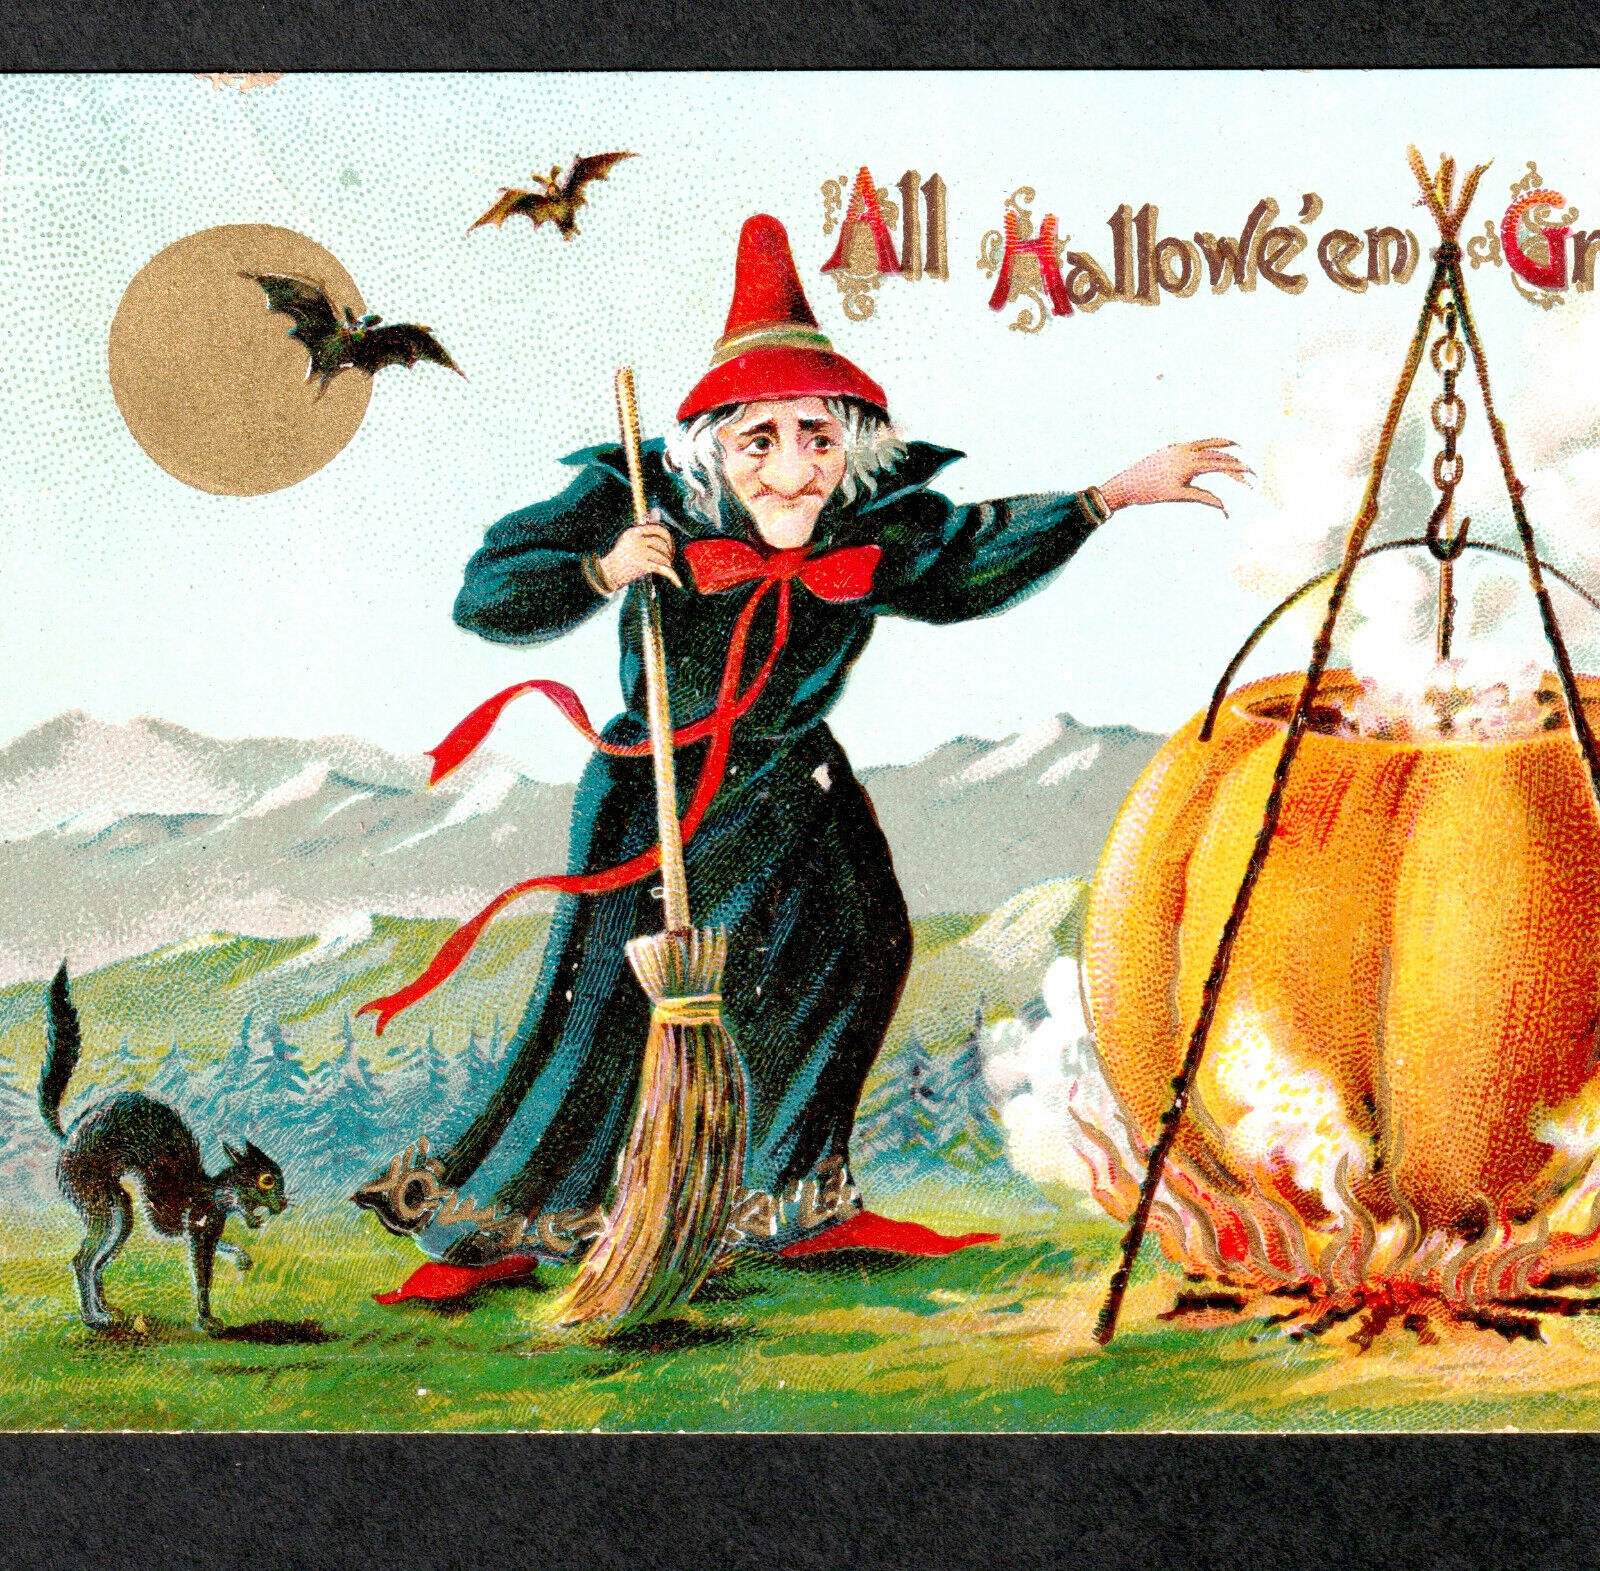 Witch Pumpkin Cauldron Cat Bat All Halloween Greetings Gottschalk 2040 PostCard